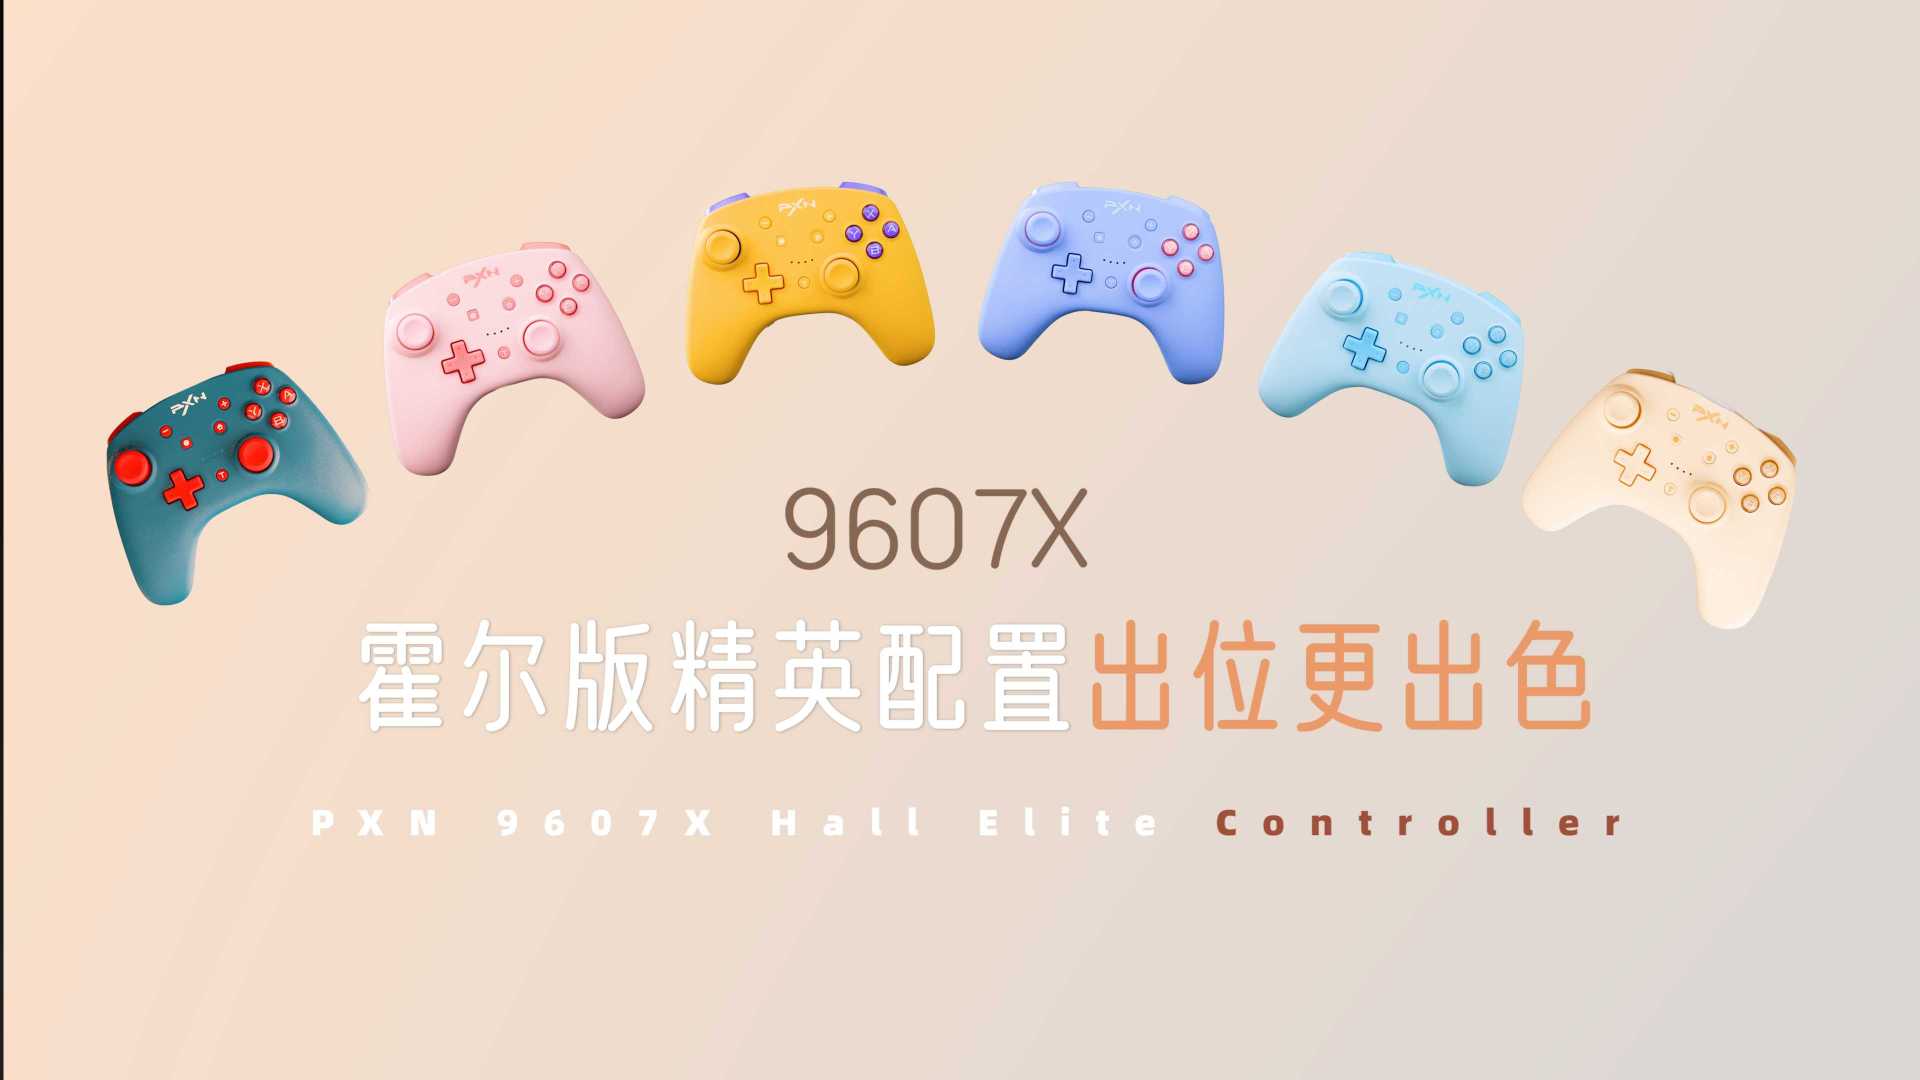 色彩律动 PXN 莱仕达9607X游戏手柄广告宣传视频